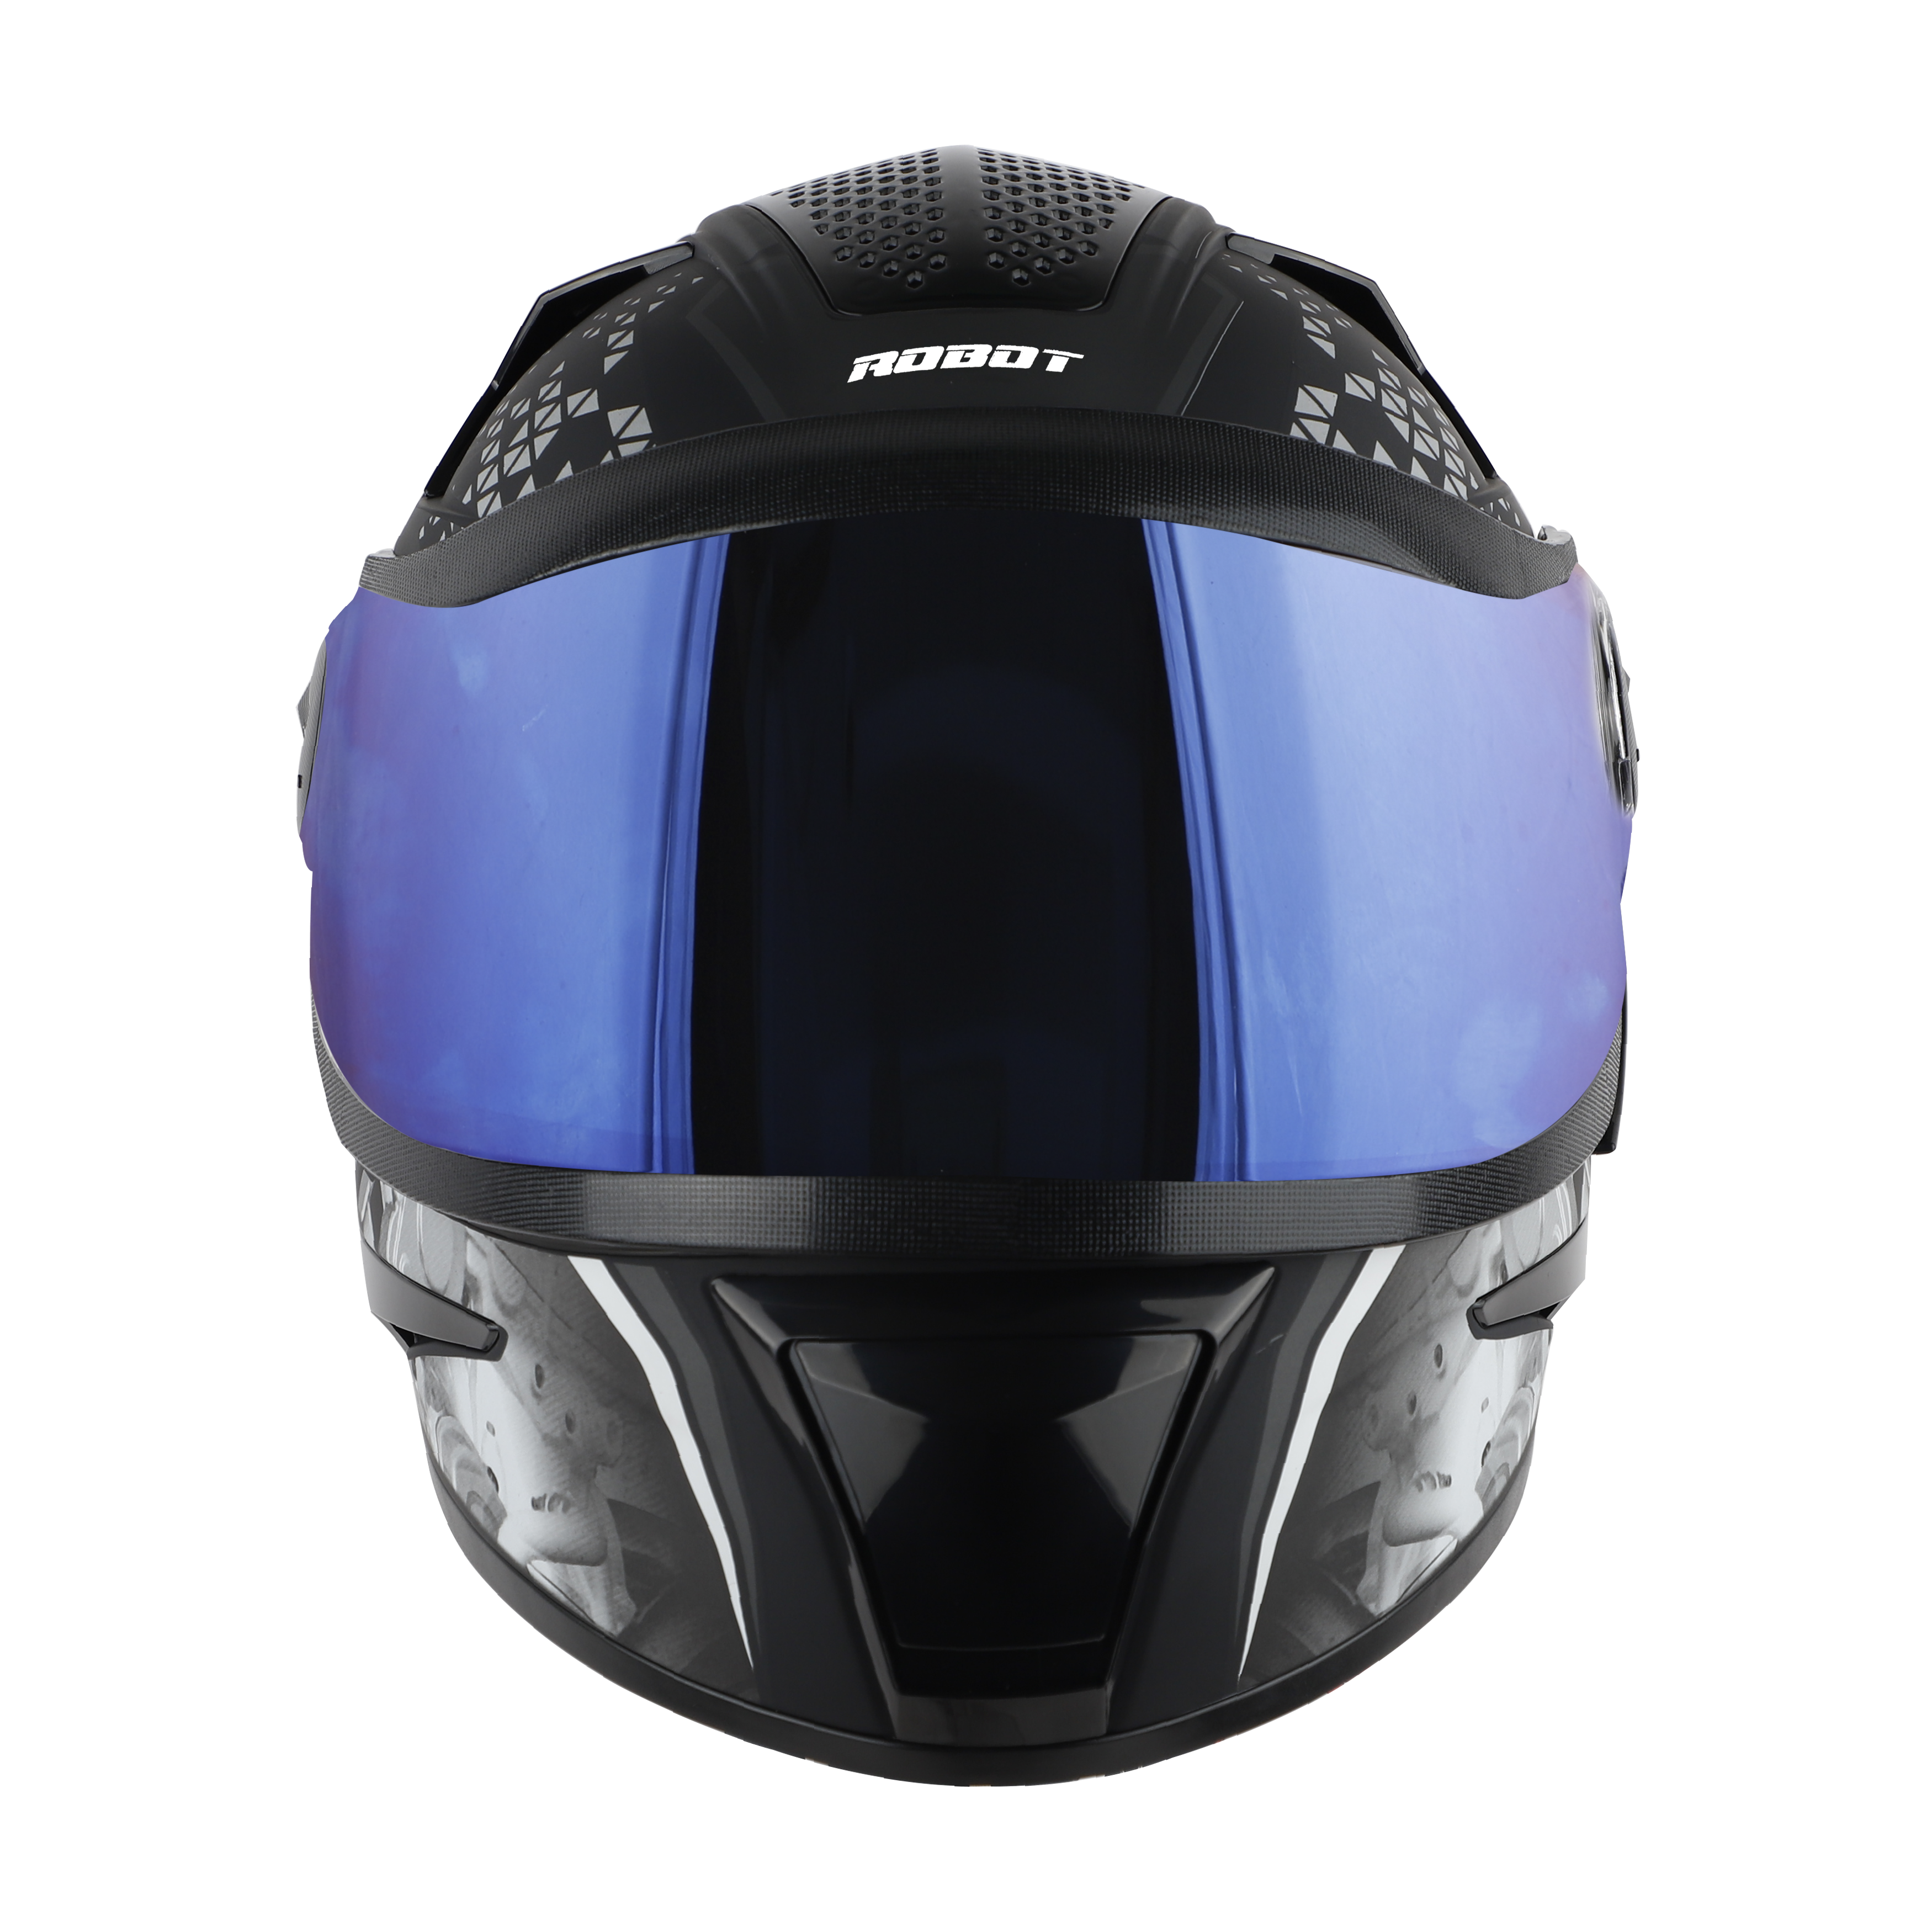 Steelbird SBH-17 Ignimeter Full Face ISI Certified Graphic Helmet (Matt Black Grey With Chrome Blue Visor)